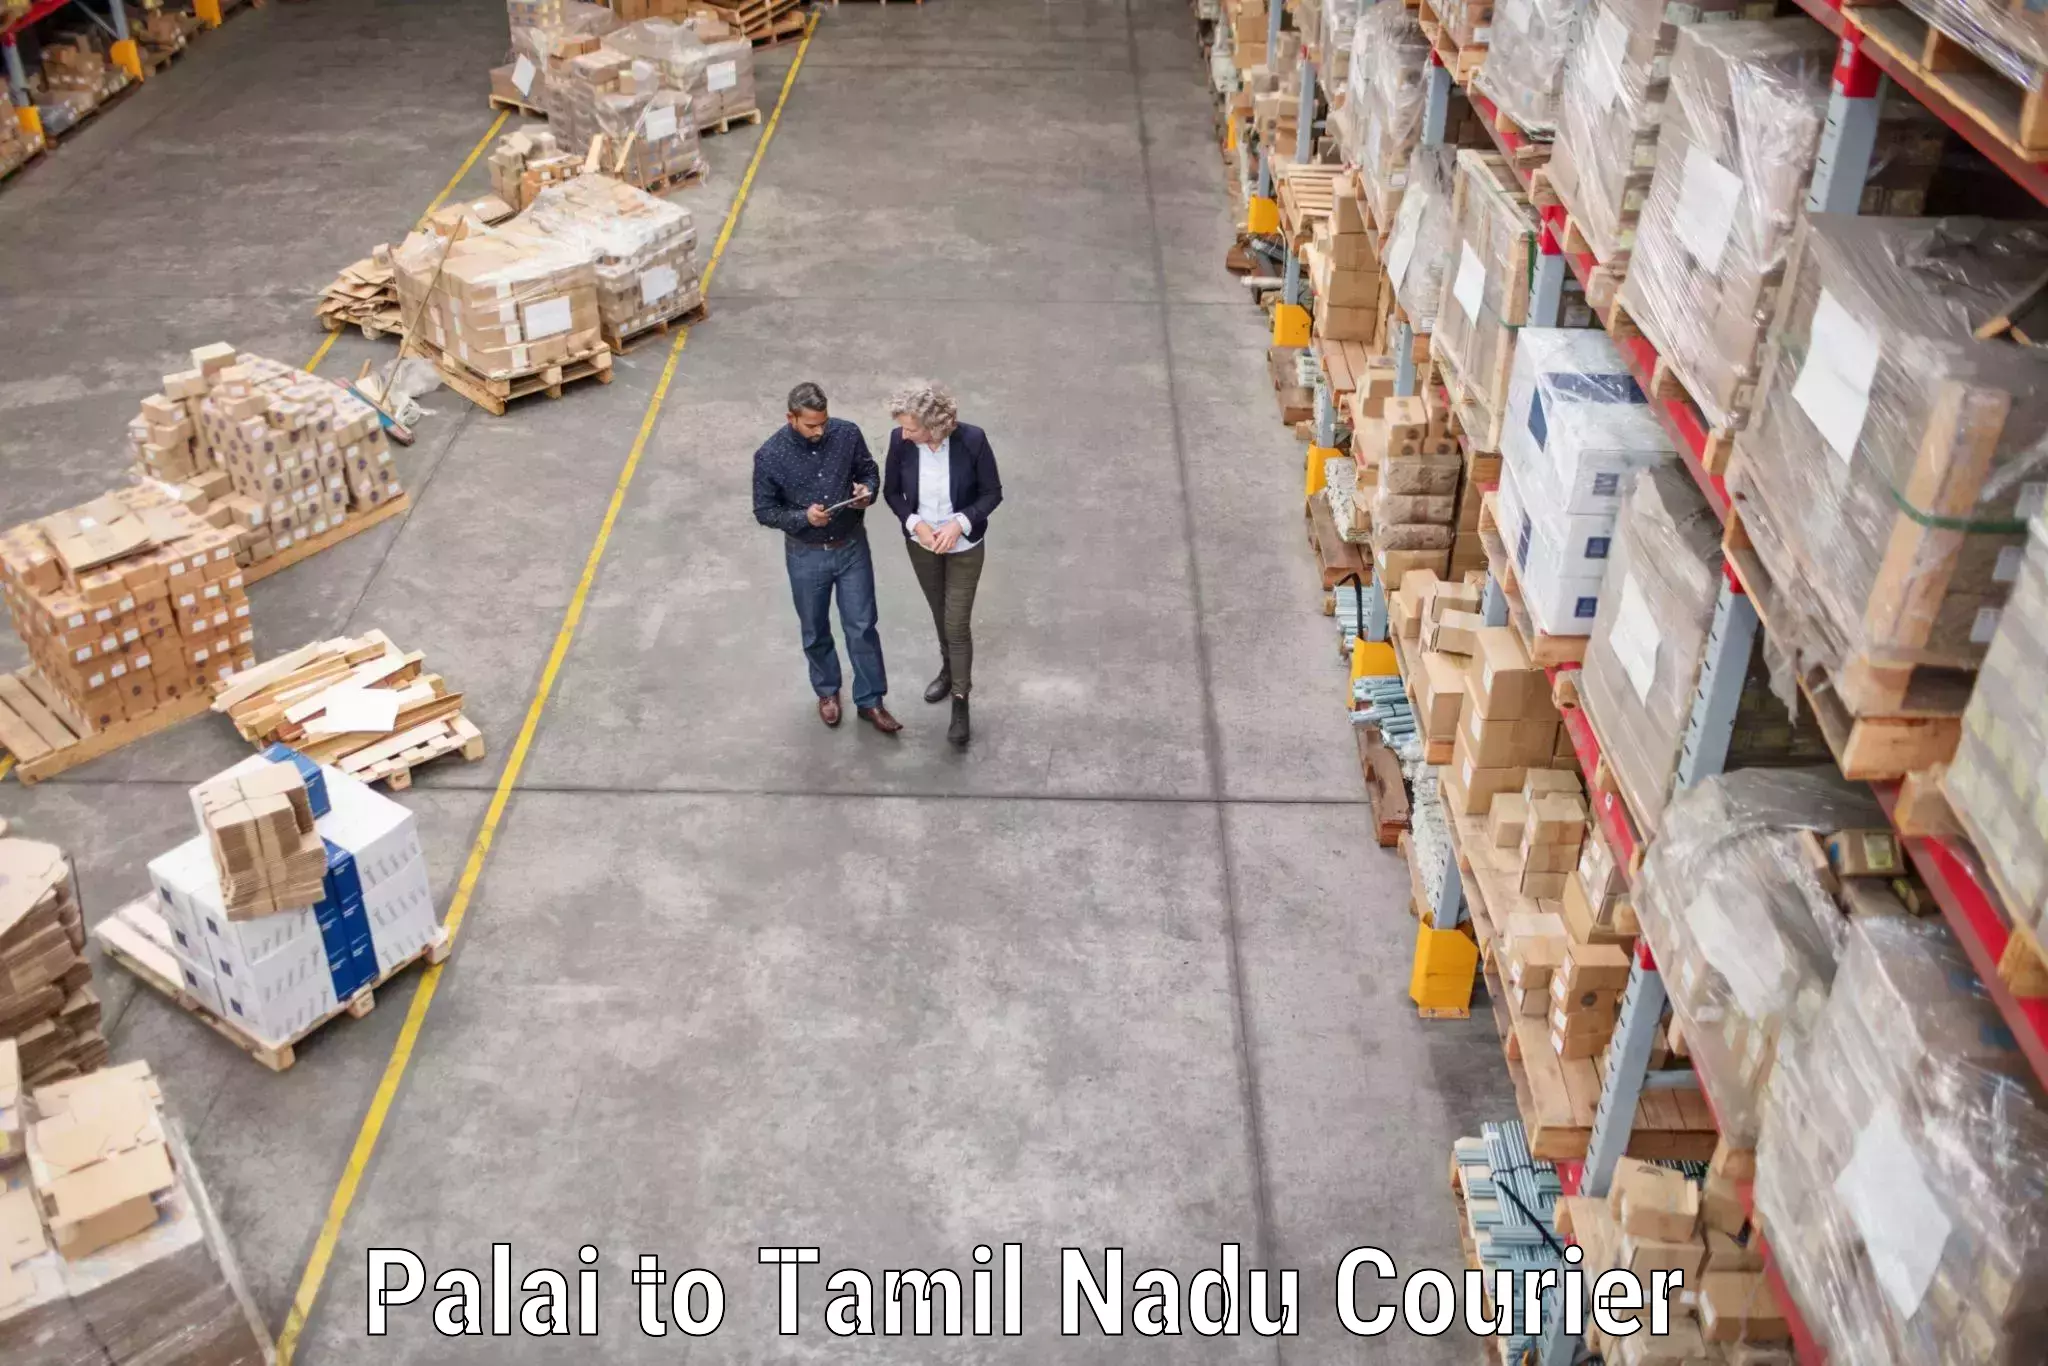 Reliable movers Palai to Thiruvadanai